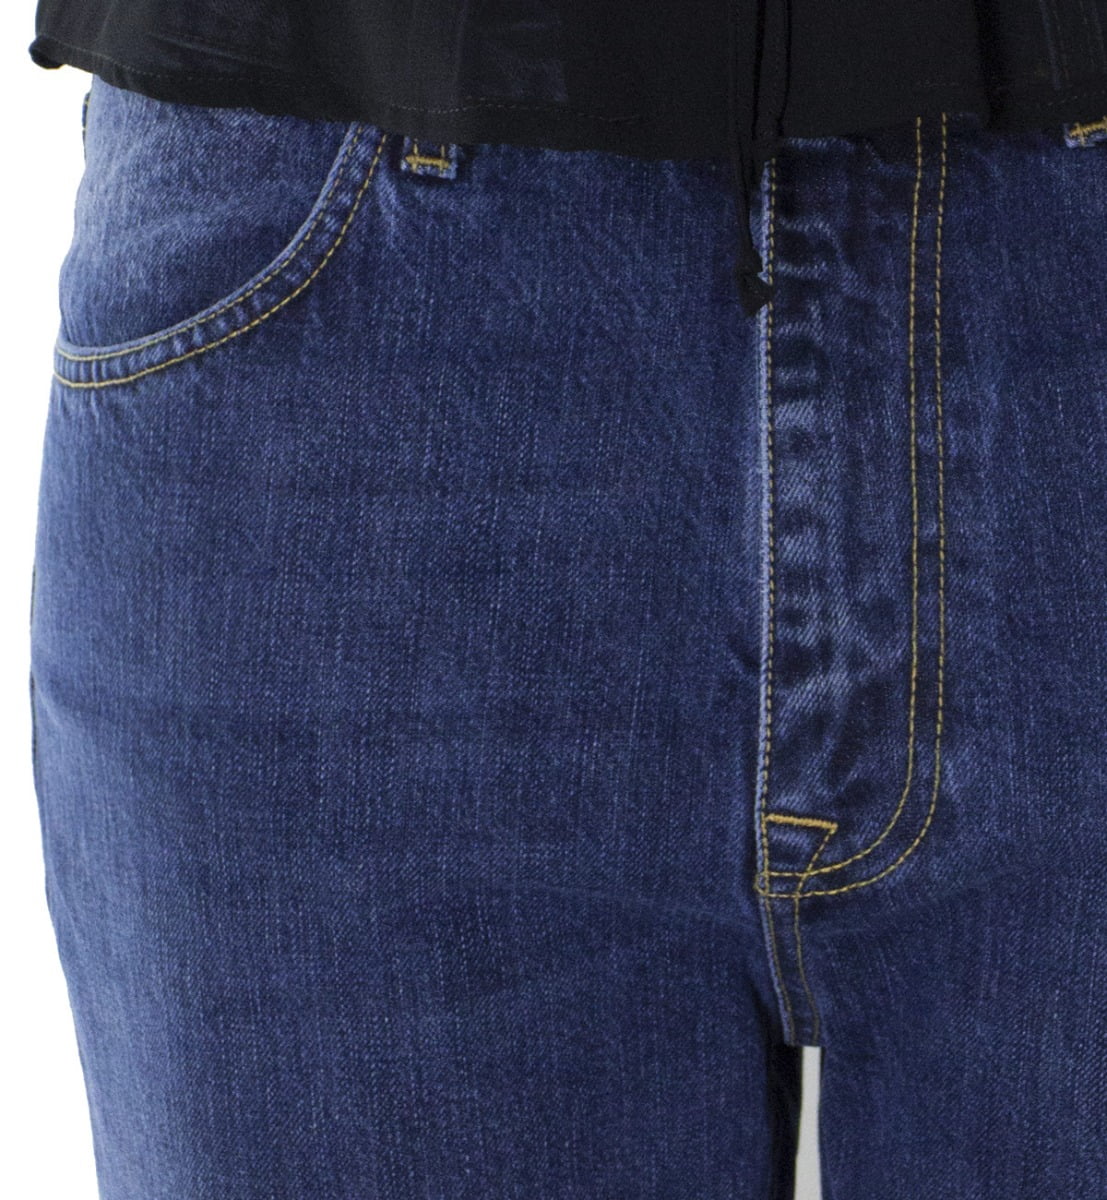 Jeans donna tessuto fisso lavaggio 1 sabbiato modello baggy 5 tasche